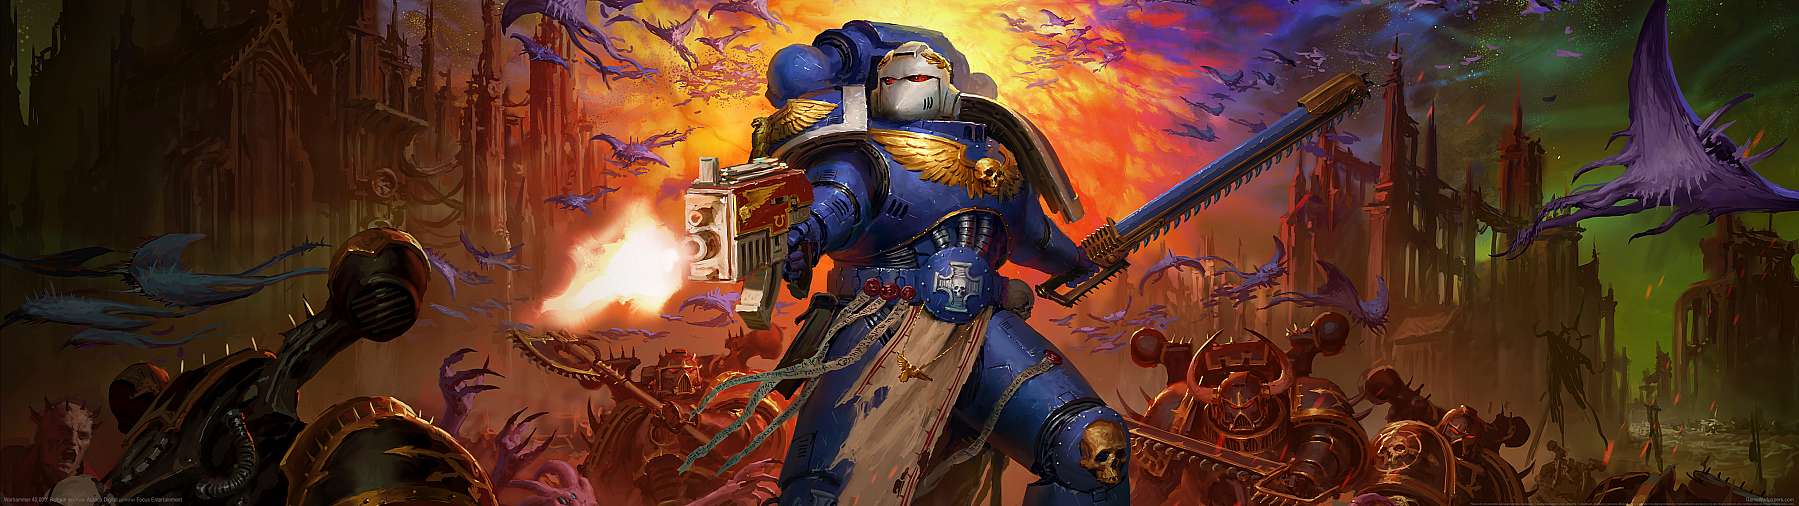 Warhammer 40,000: Boltgun superwide wallpaper or background 01